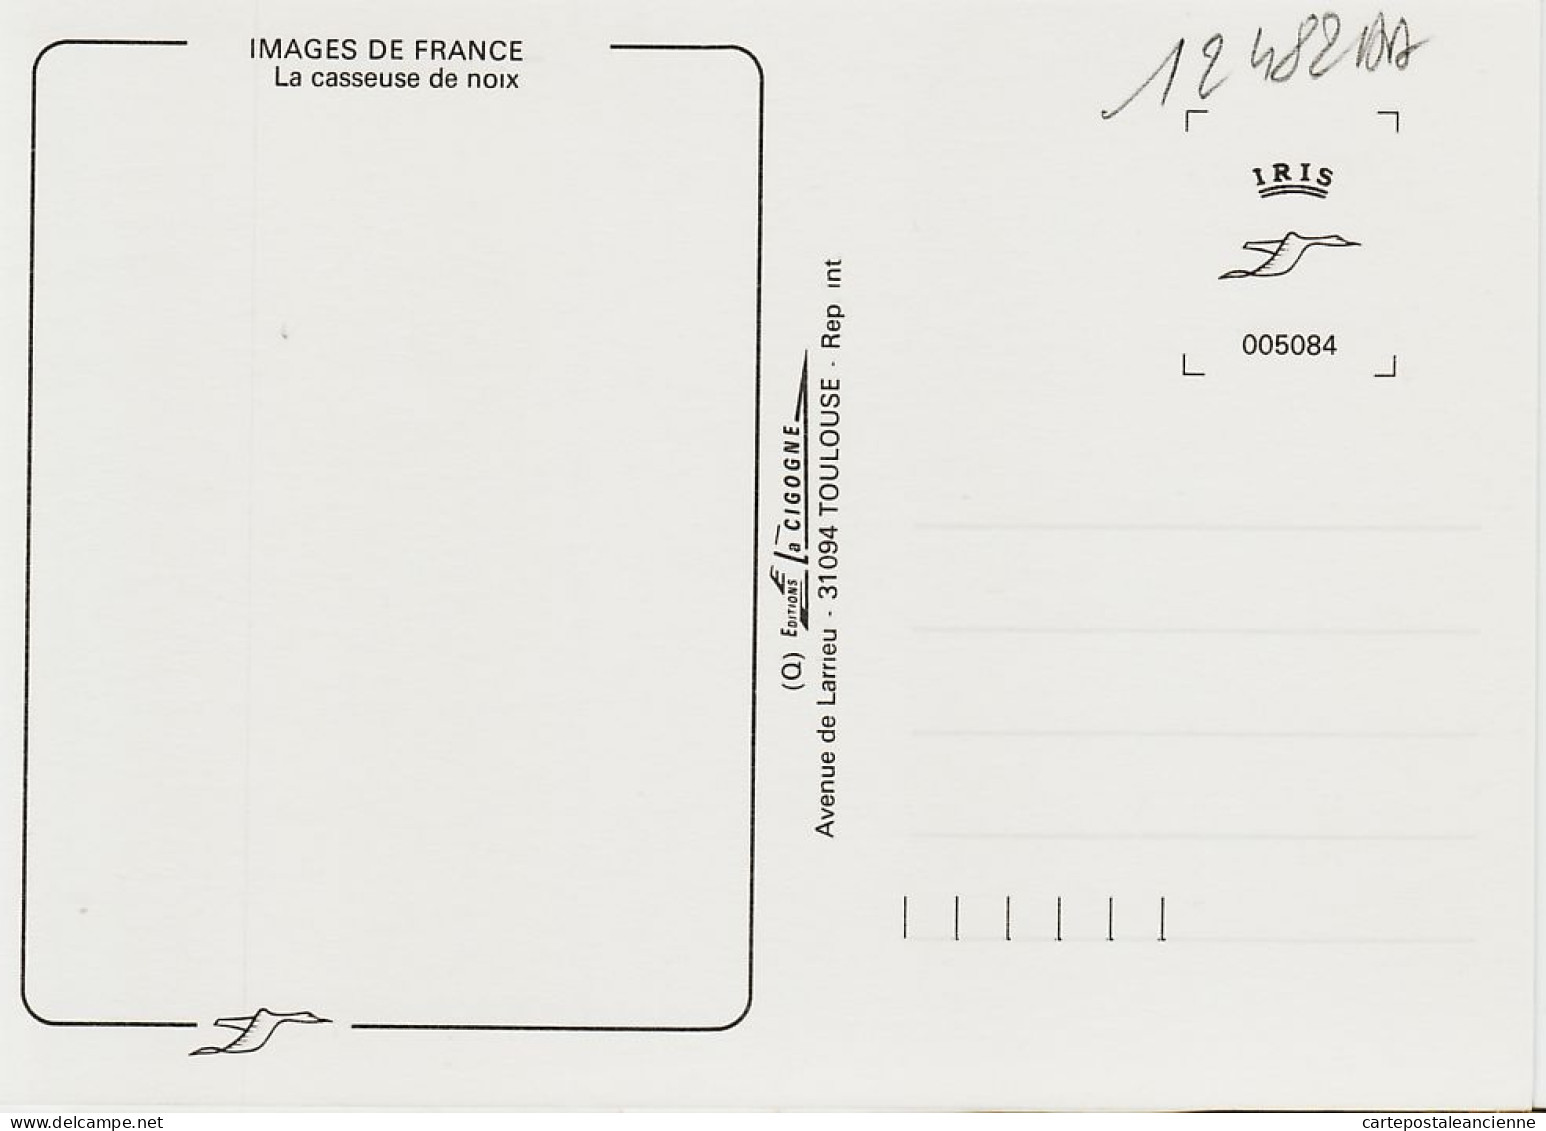 05454 / Midi Pyrénées La CASSEUSE De NOIX Metier Paysanne Marteau Ardoise Atre Cheminee 1985s - IRIS CIGOGNE - Bauern